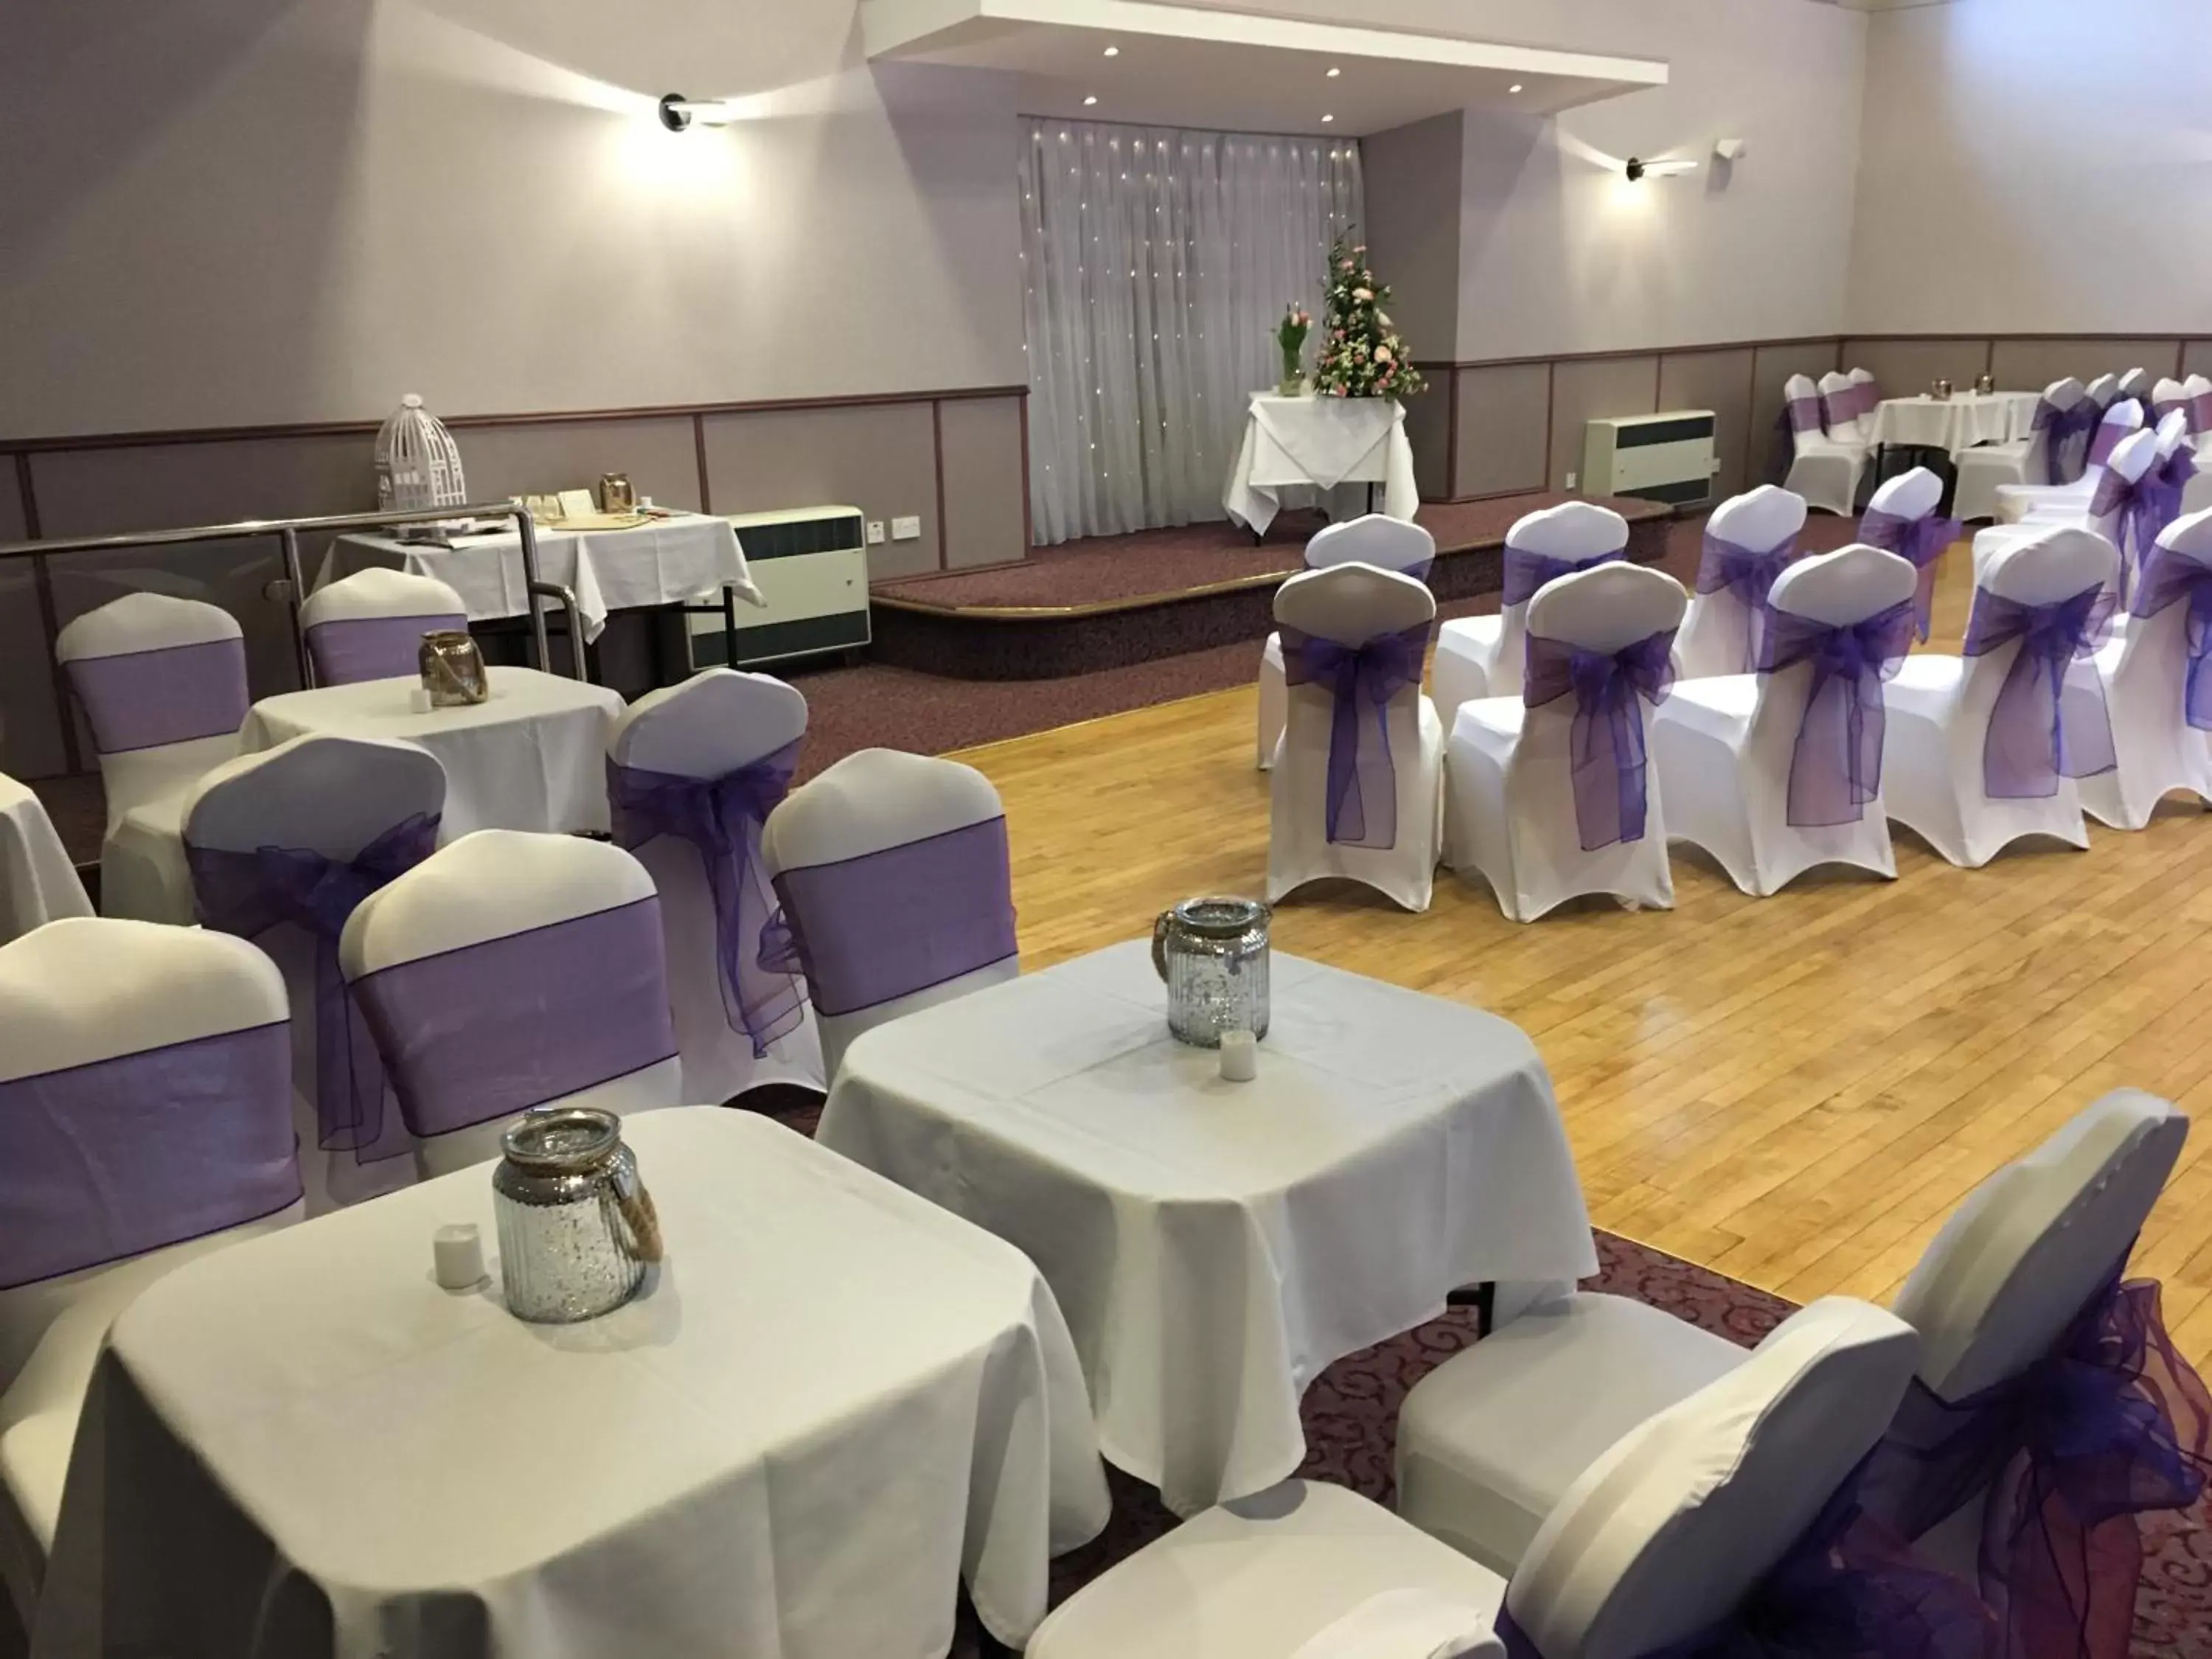 Banquet/Function facilities, Banquet Facilities in Laichmoray Hotel